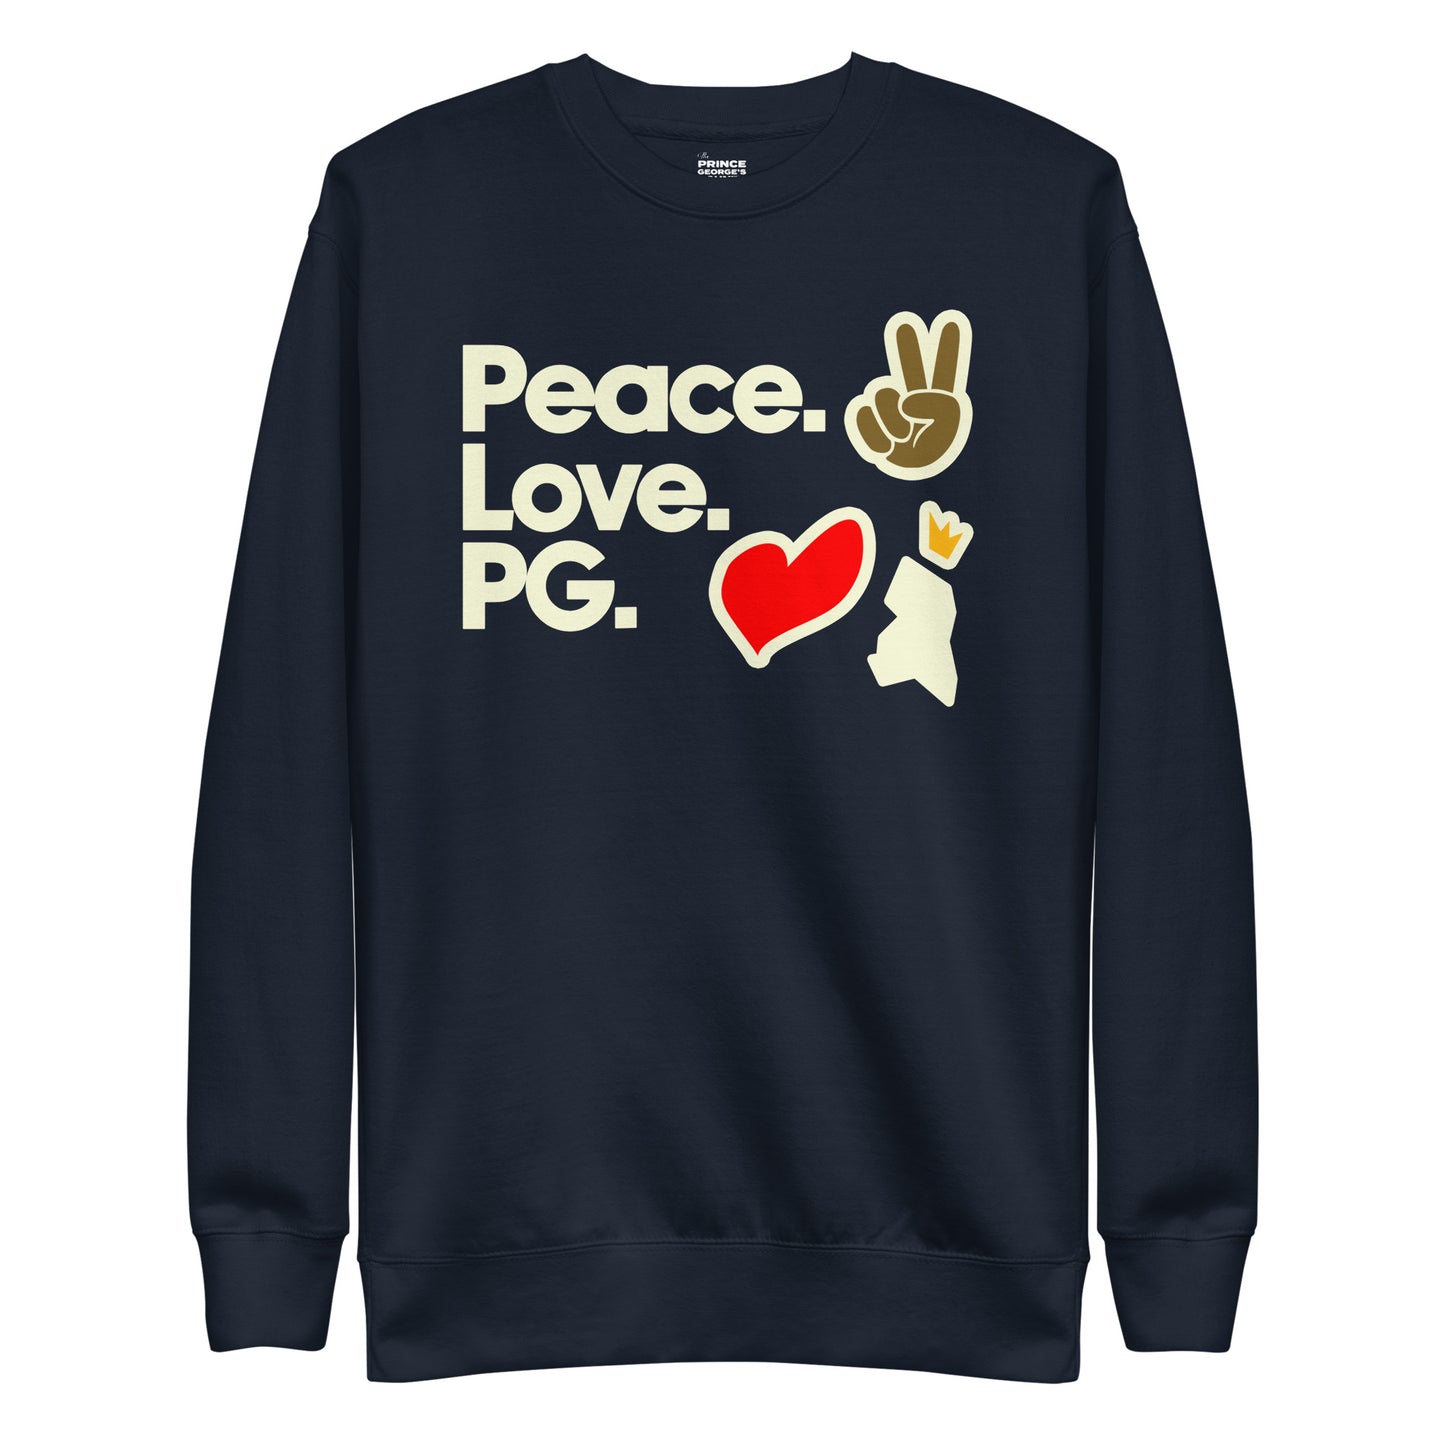 Peace. Love. PG. Unisex Premium Sweatshirt